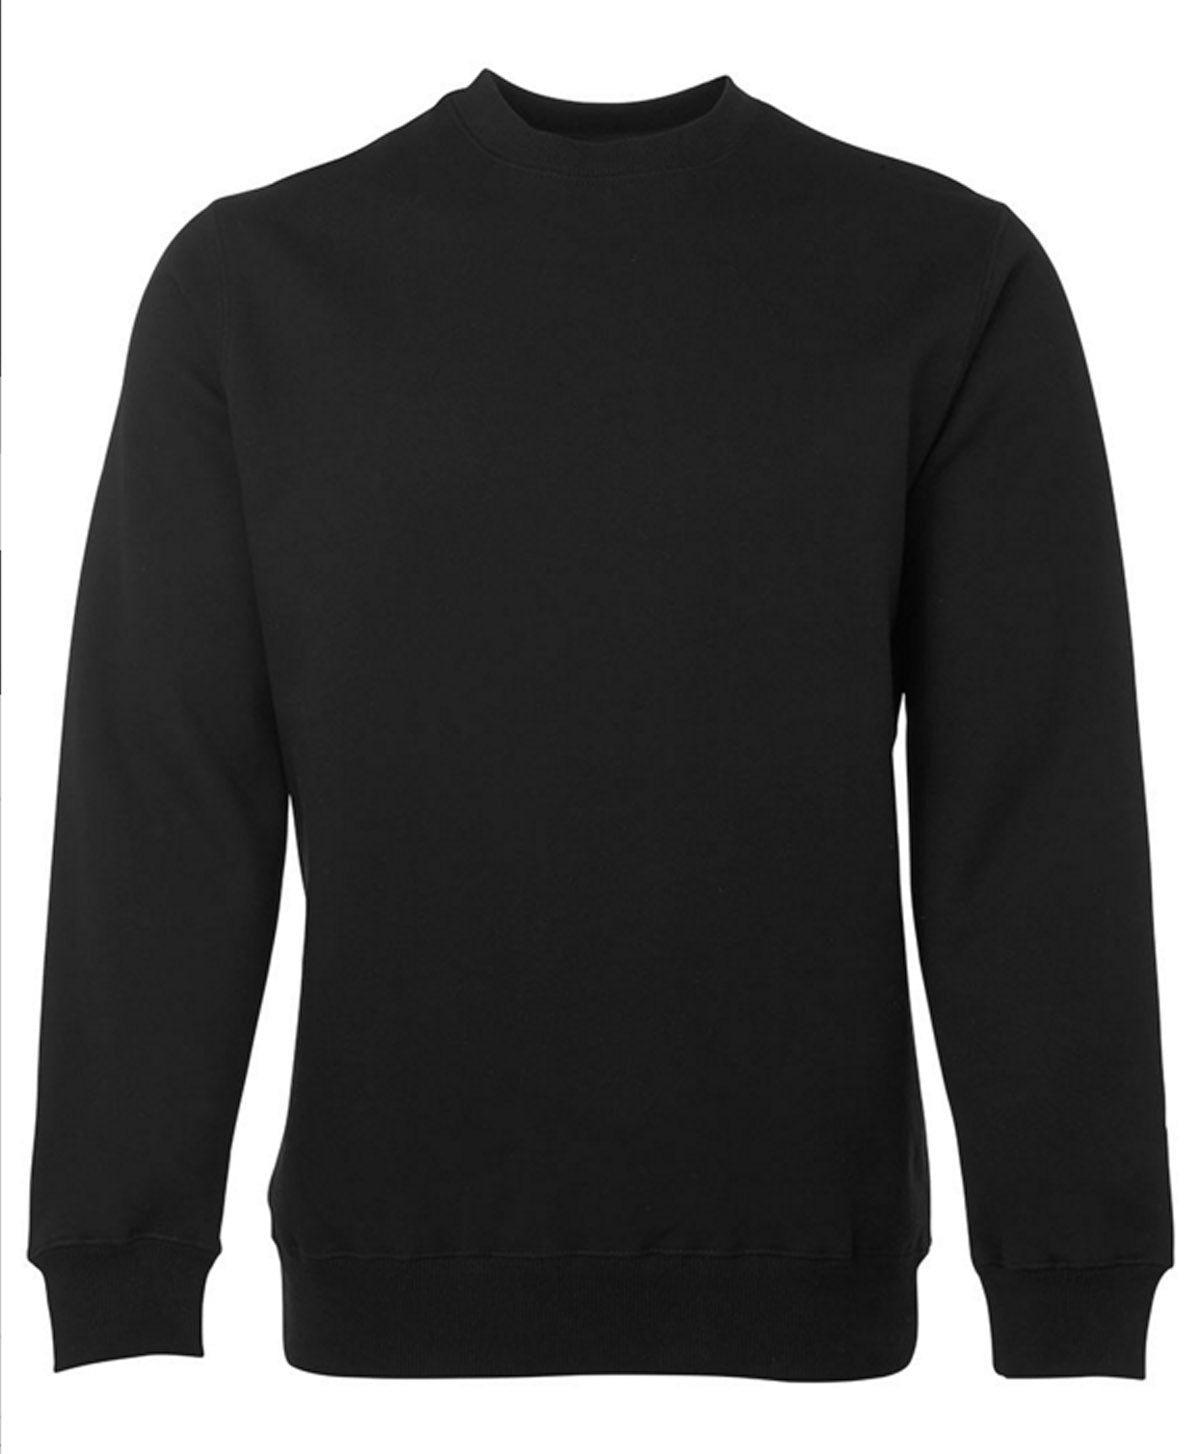 JBs Fleecy Sweater Crew Neck- BLACK NAVY GREY S Black Mens Winter Top by JBs Wear | The Bloke Shop